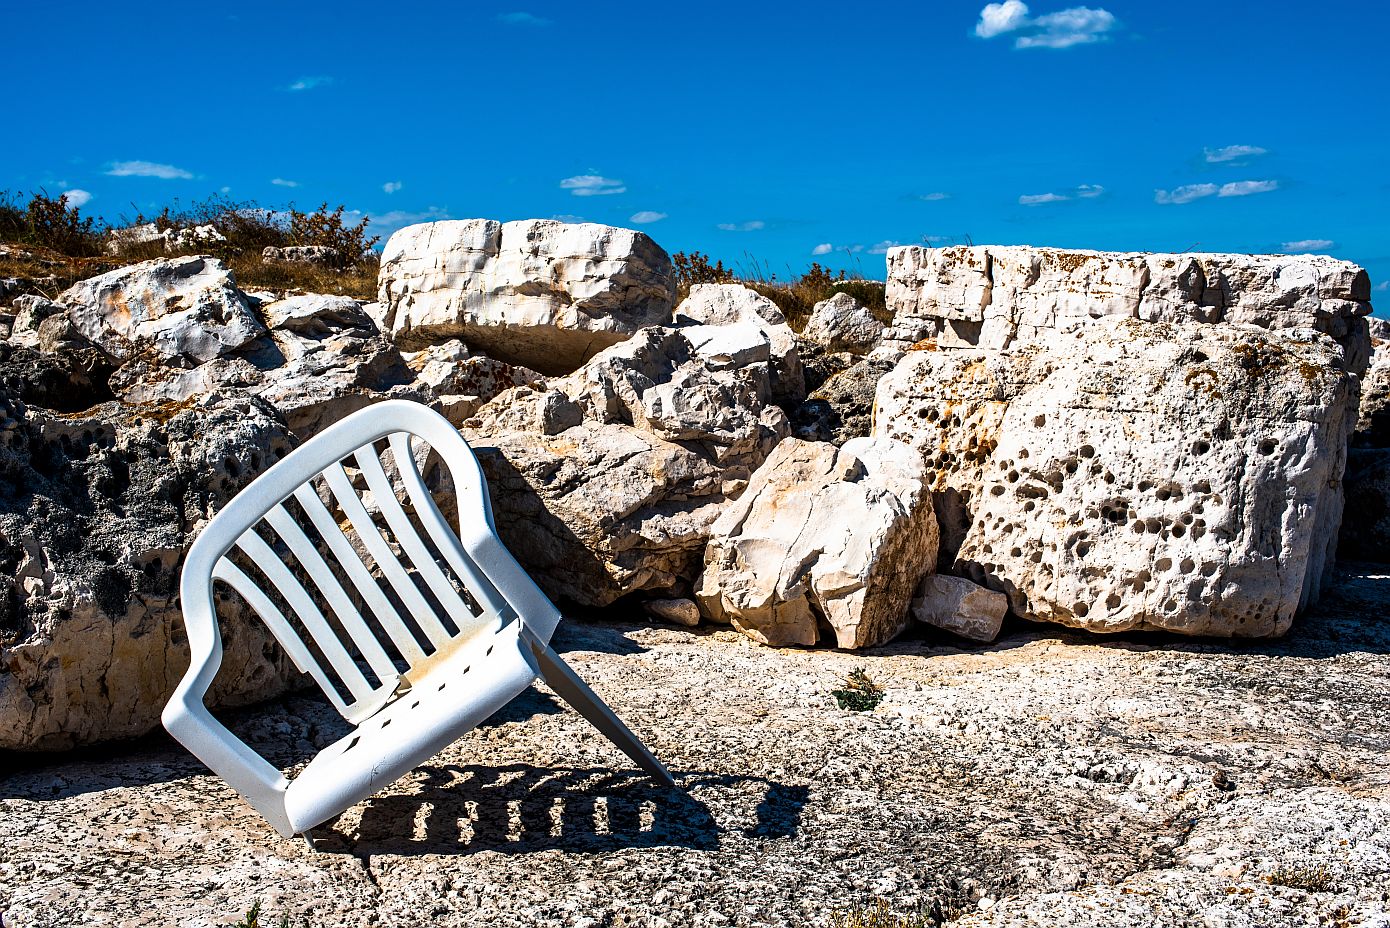 Απίστευτο κι όμως αληθινό: Οι Νew York Times αποθεώνουν την αθάνατη πλαστική λευκή καρέκλα